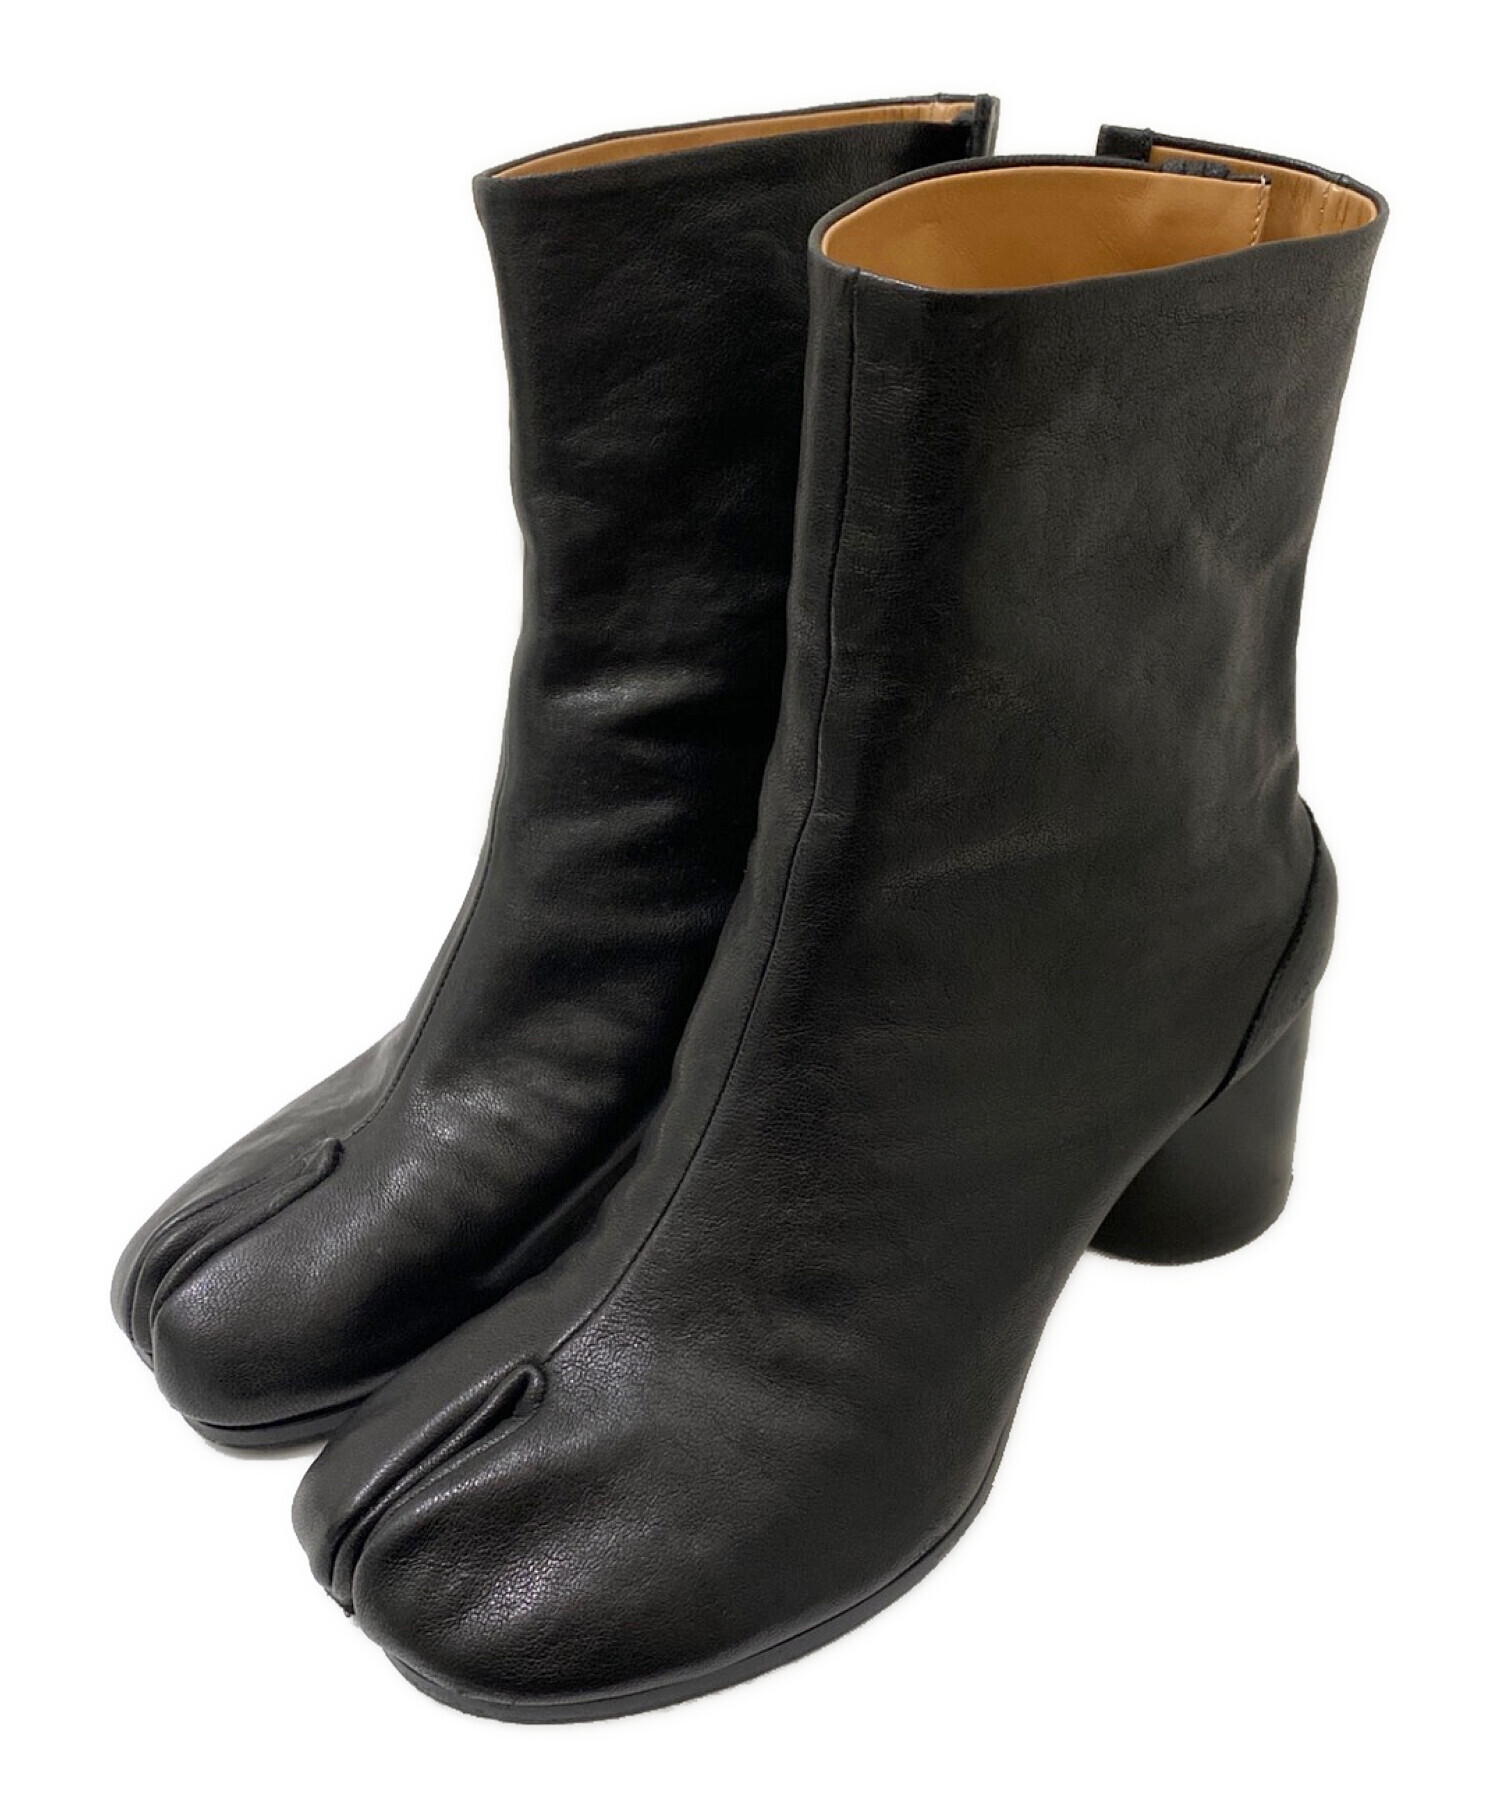 Maison Margiela 22 (メゾン マルジェラ 22) 足袋ブーツ ブラック サイズ:38